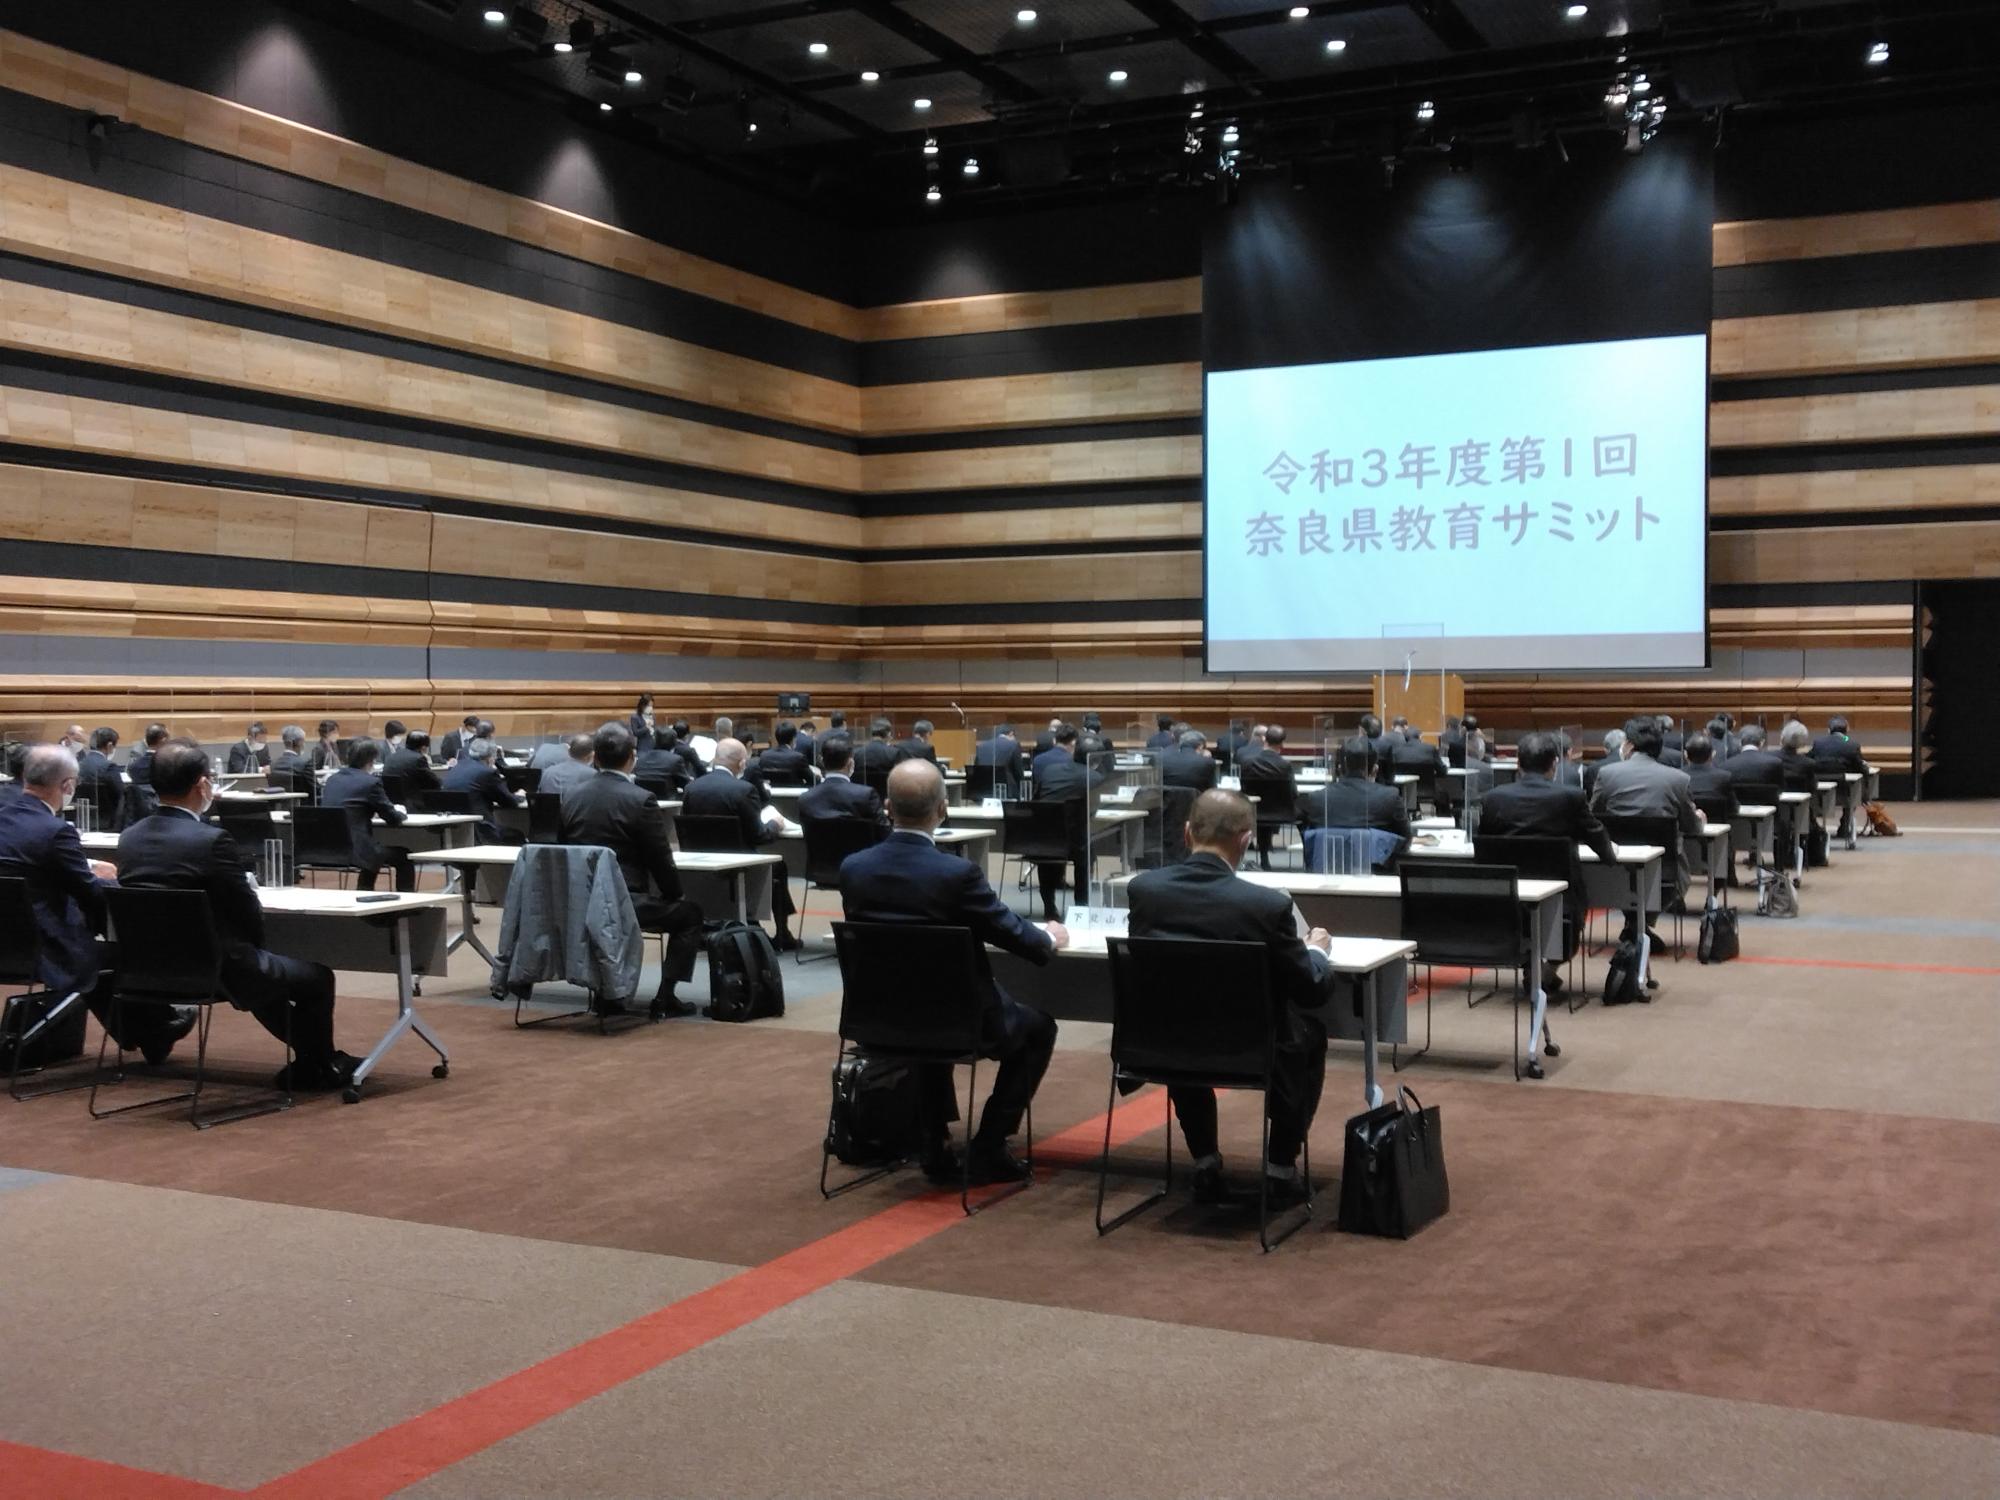 奈良県コンベンションセンターで開催された教育サミットの様子